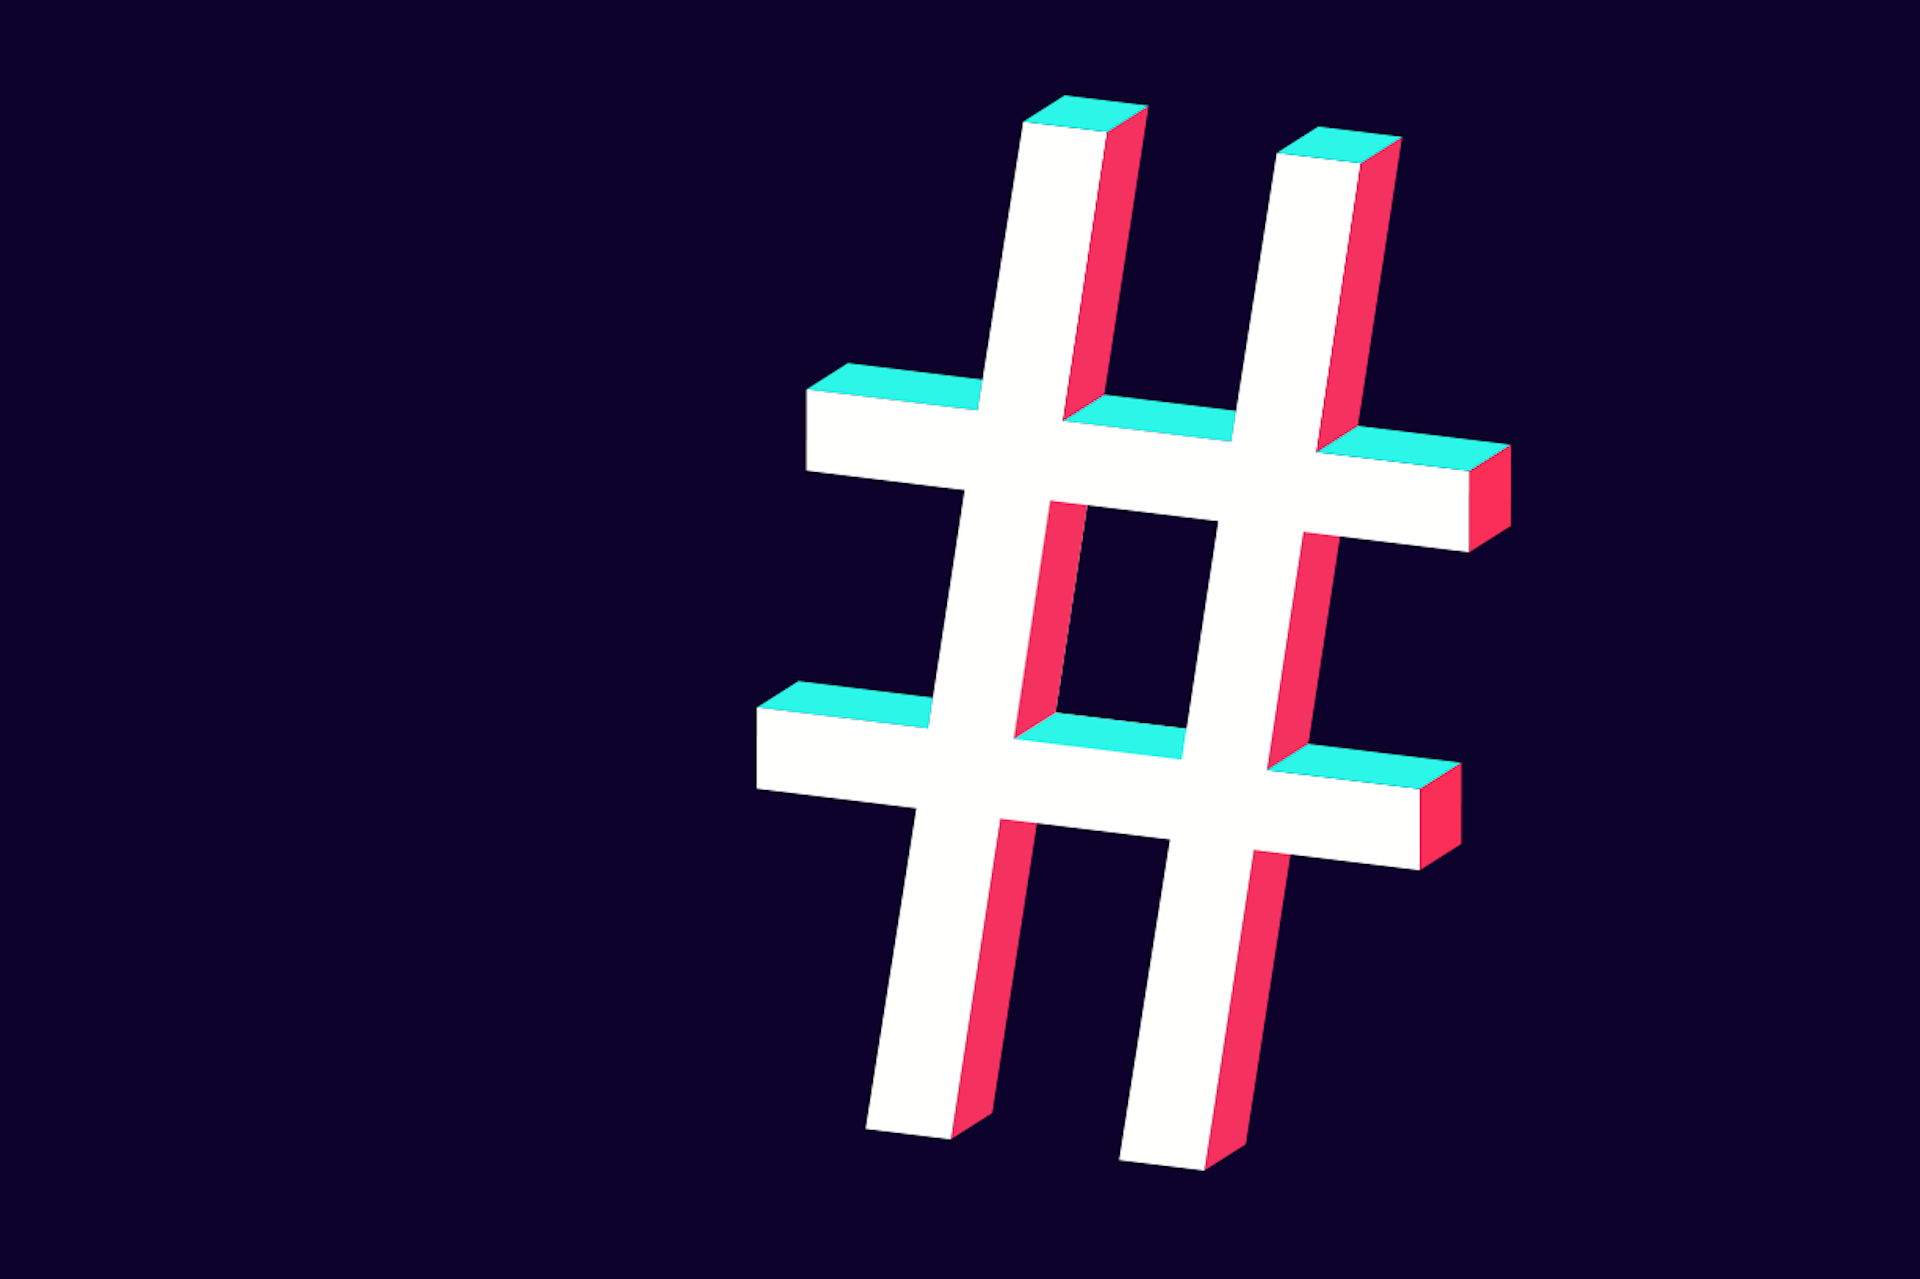 Großes Hashtag-Symbol in den Farben des TikTok-Logos, helles Petrol und helles Rosa, auf schwarzem Hintergrund. TikTok hashtag strategy blog post.